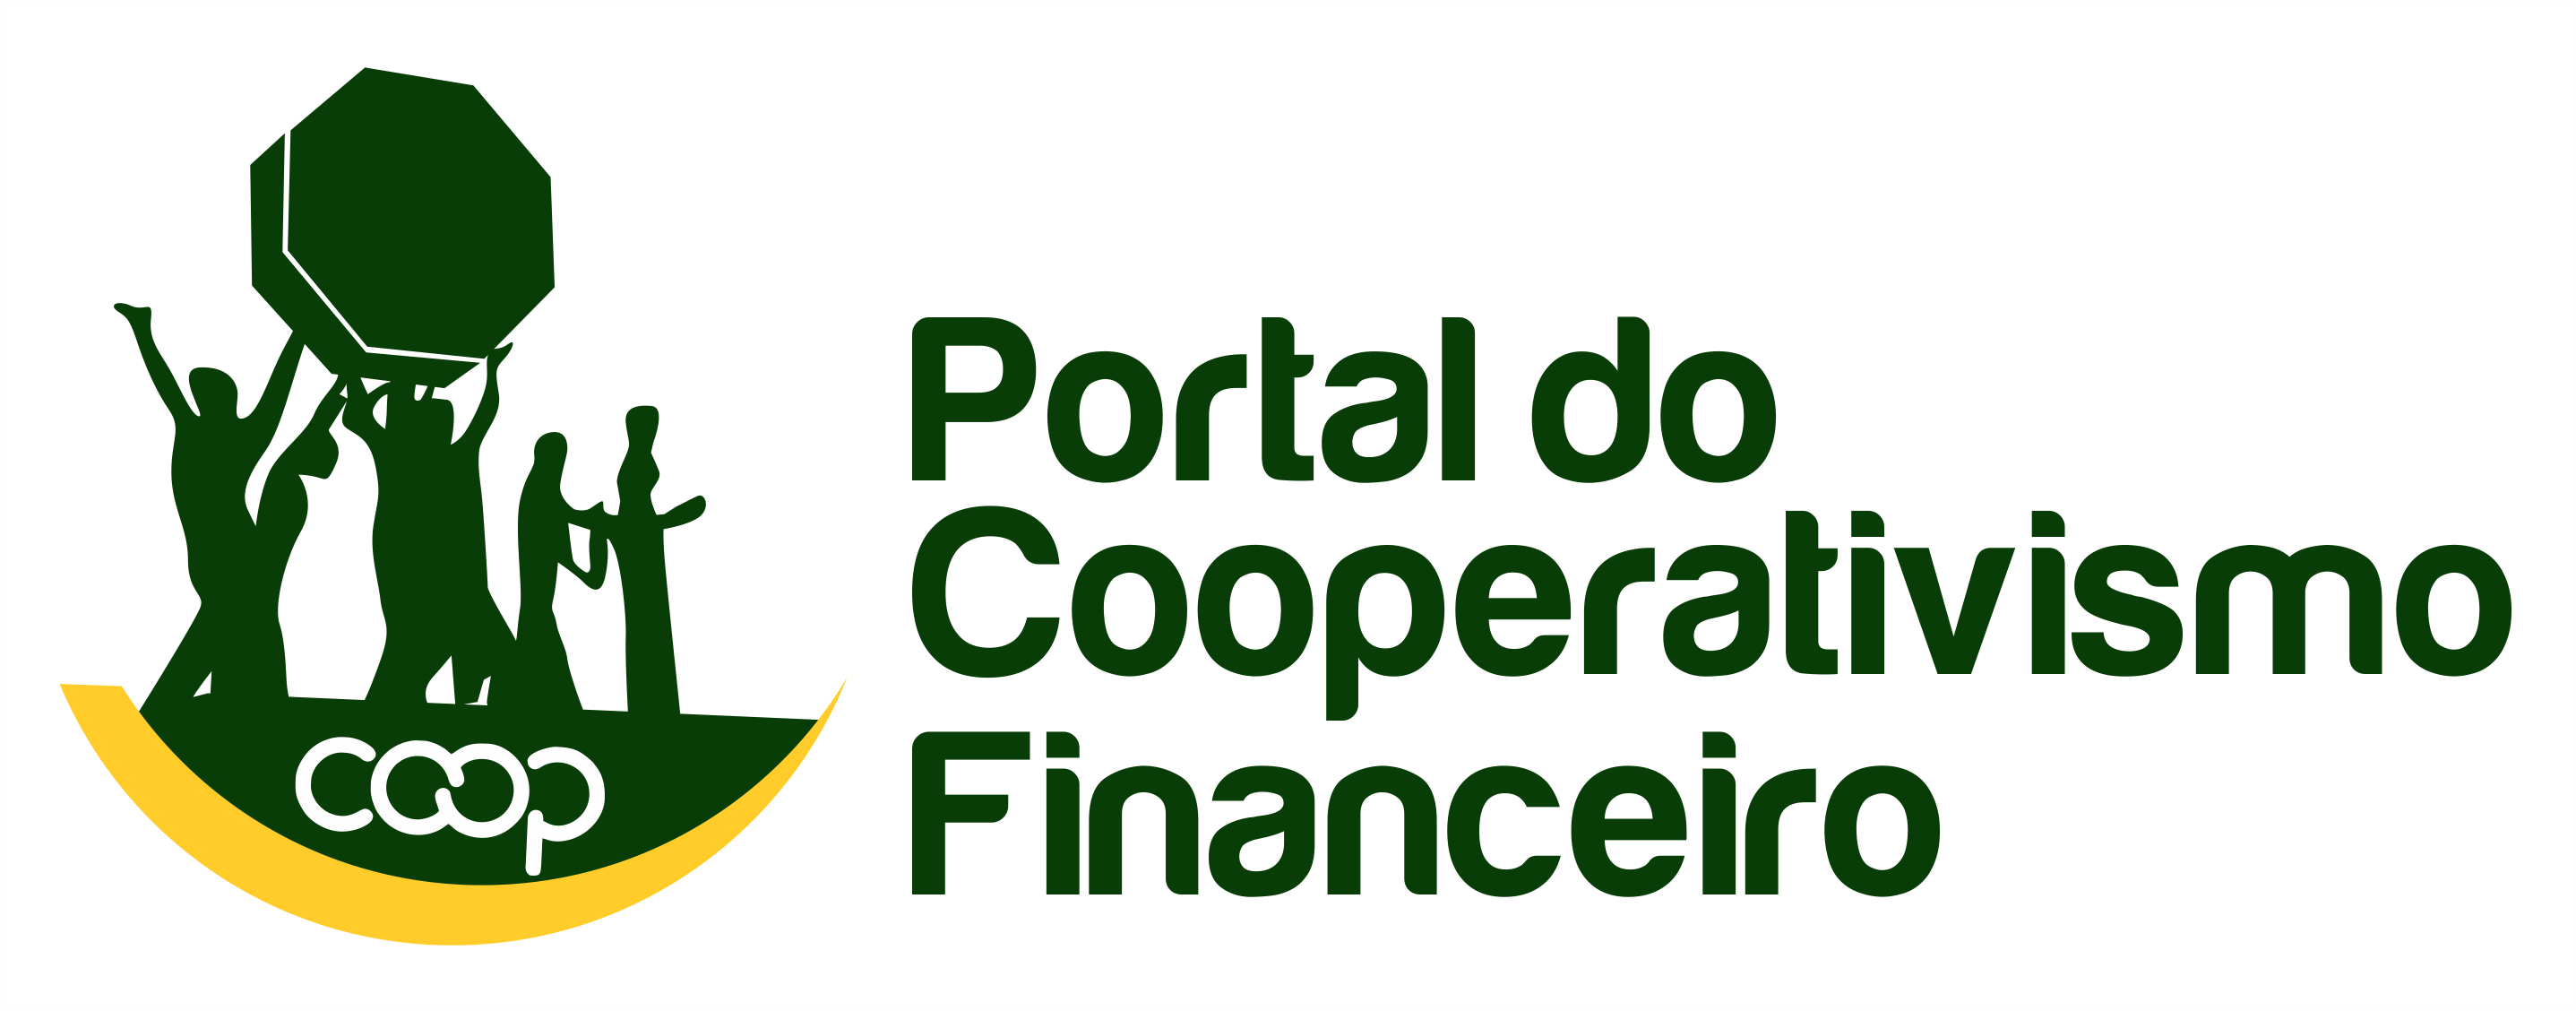 Portal do Cooperativismo Financeiro